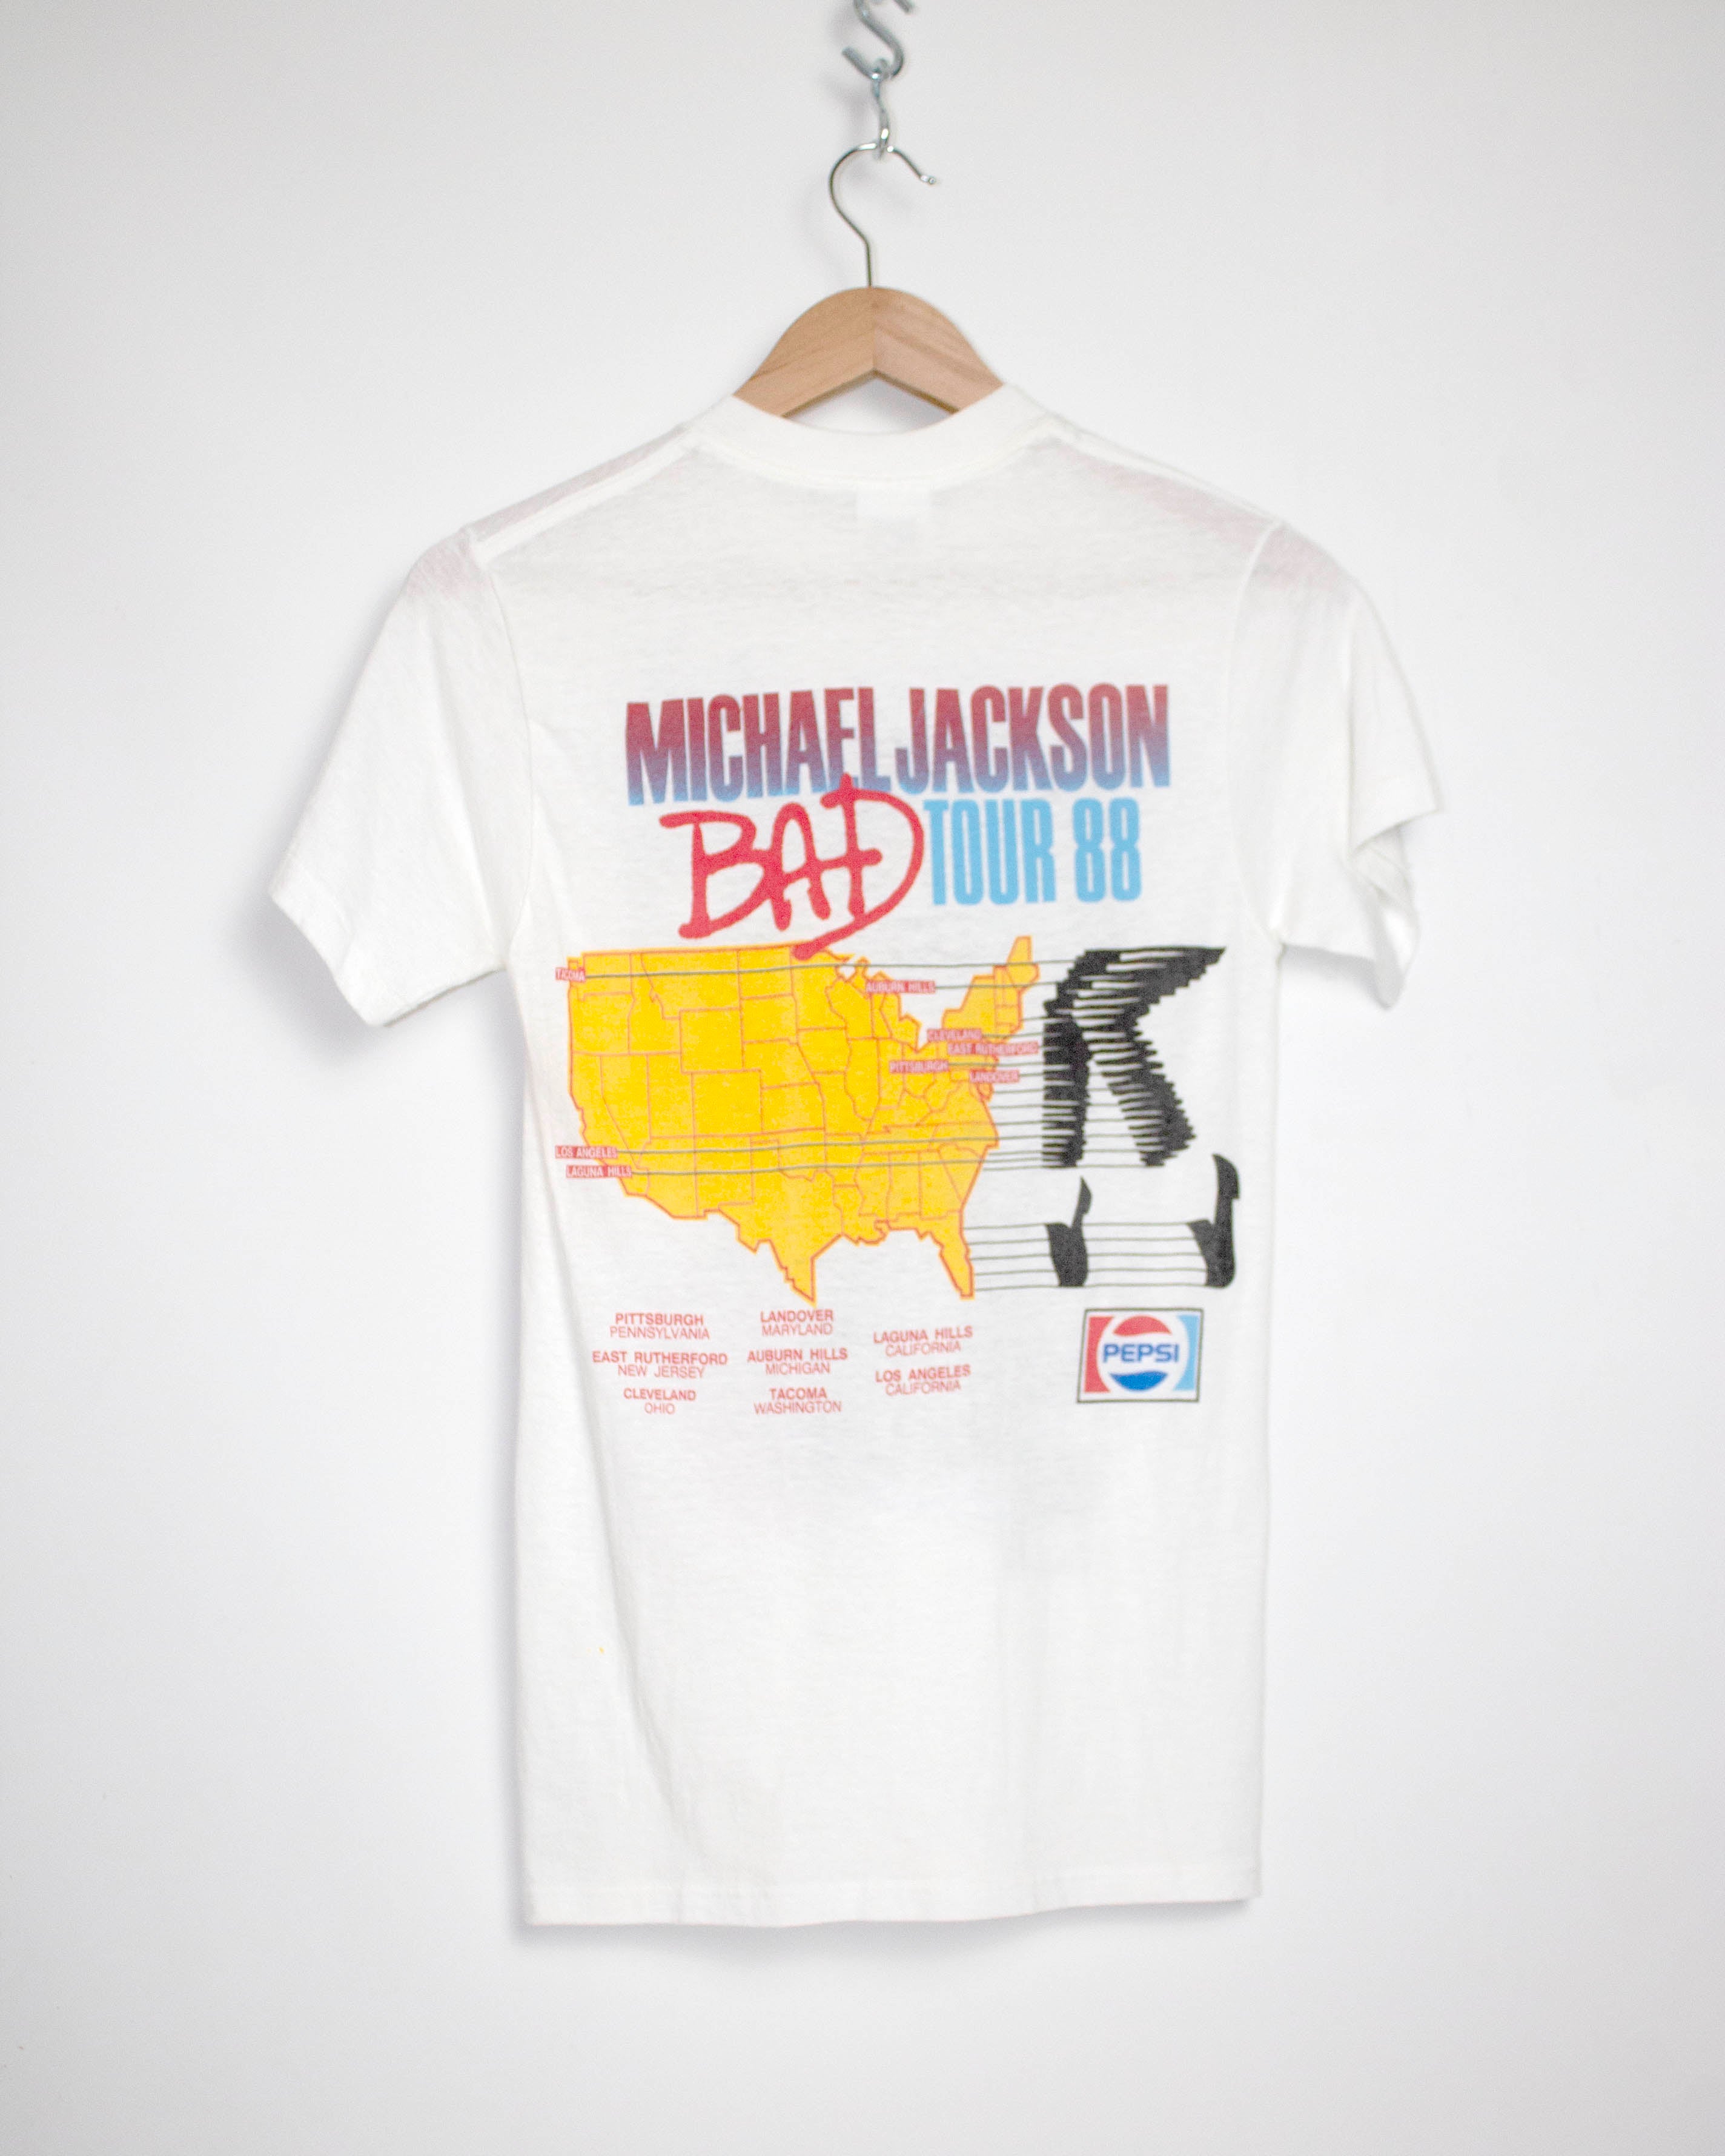 Vintage Michael Jackson Shirt original 1988 Concert Tour Promo Bad